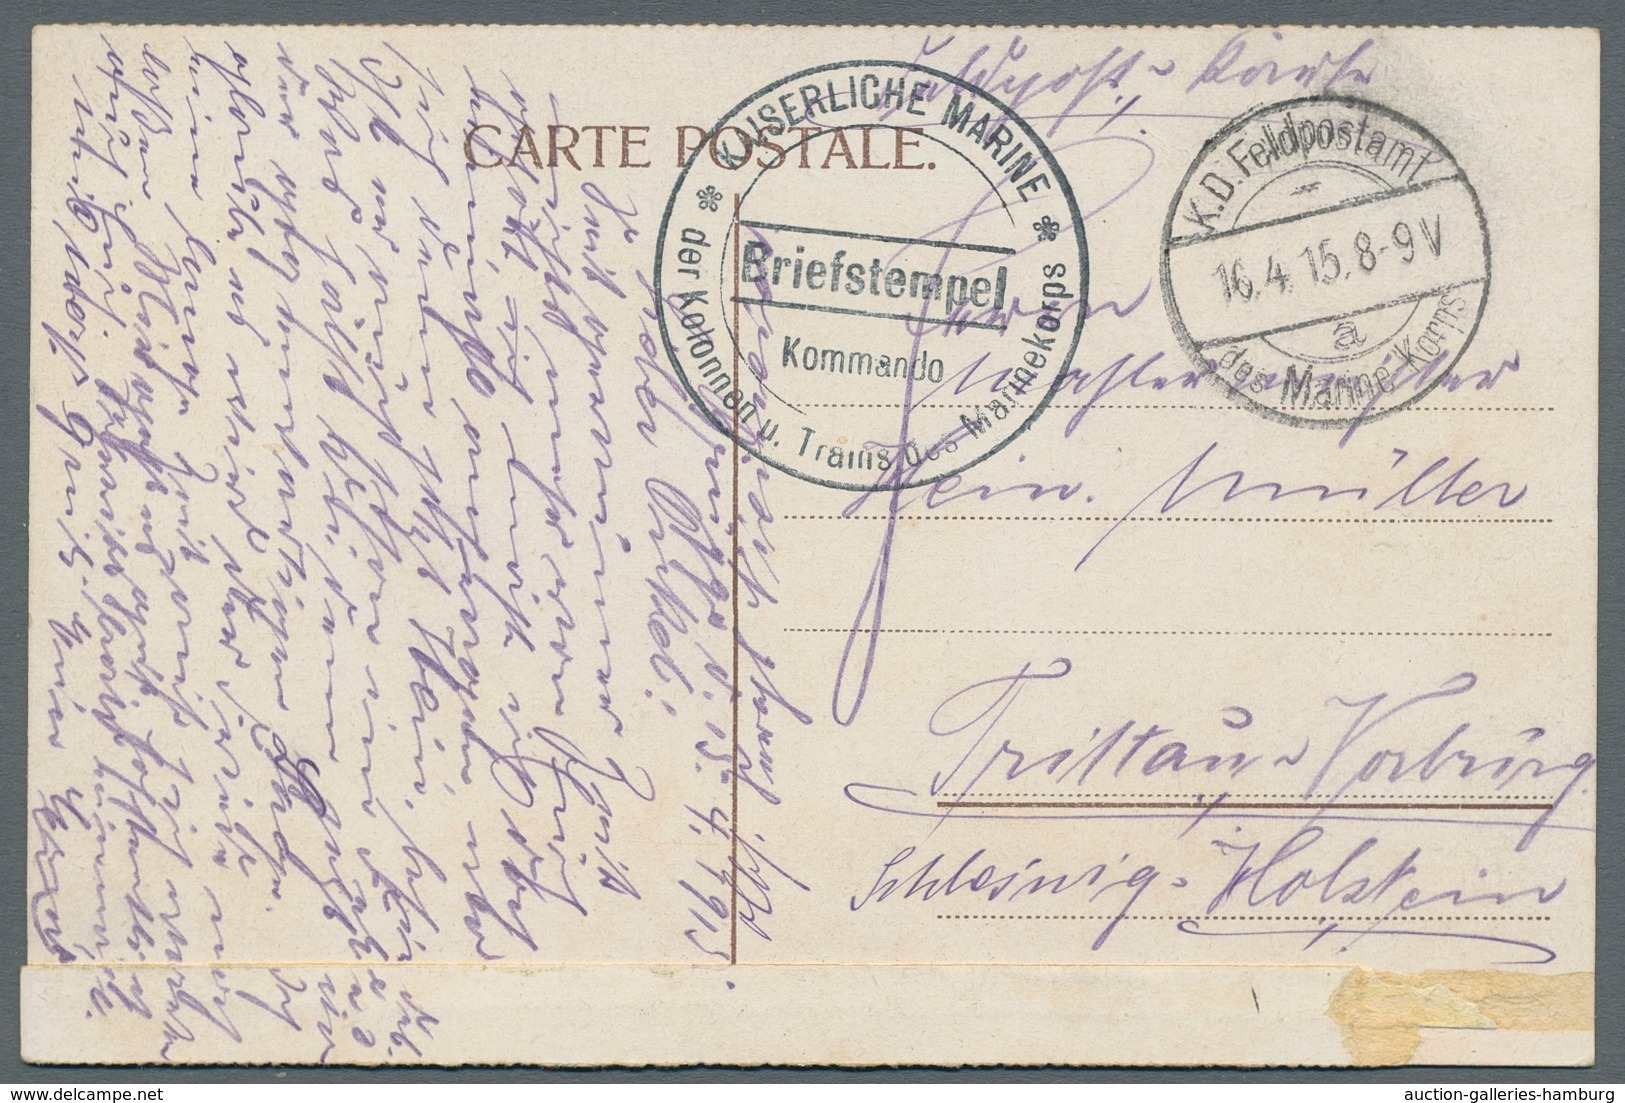 Deutsches Reich: 1873-1944, Sammlung von über 80 Belegen in einem Album mit u.a. Bedarf, Feldpost 1.